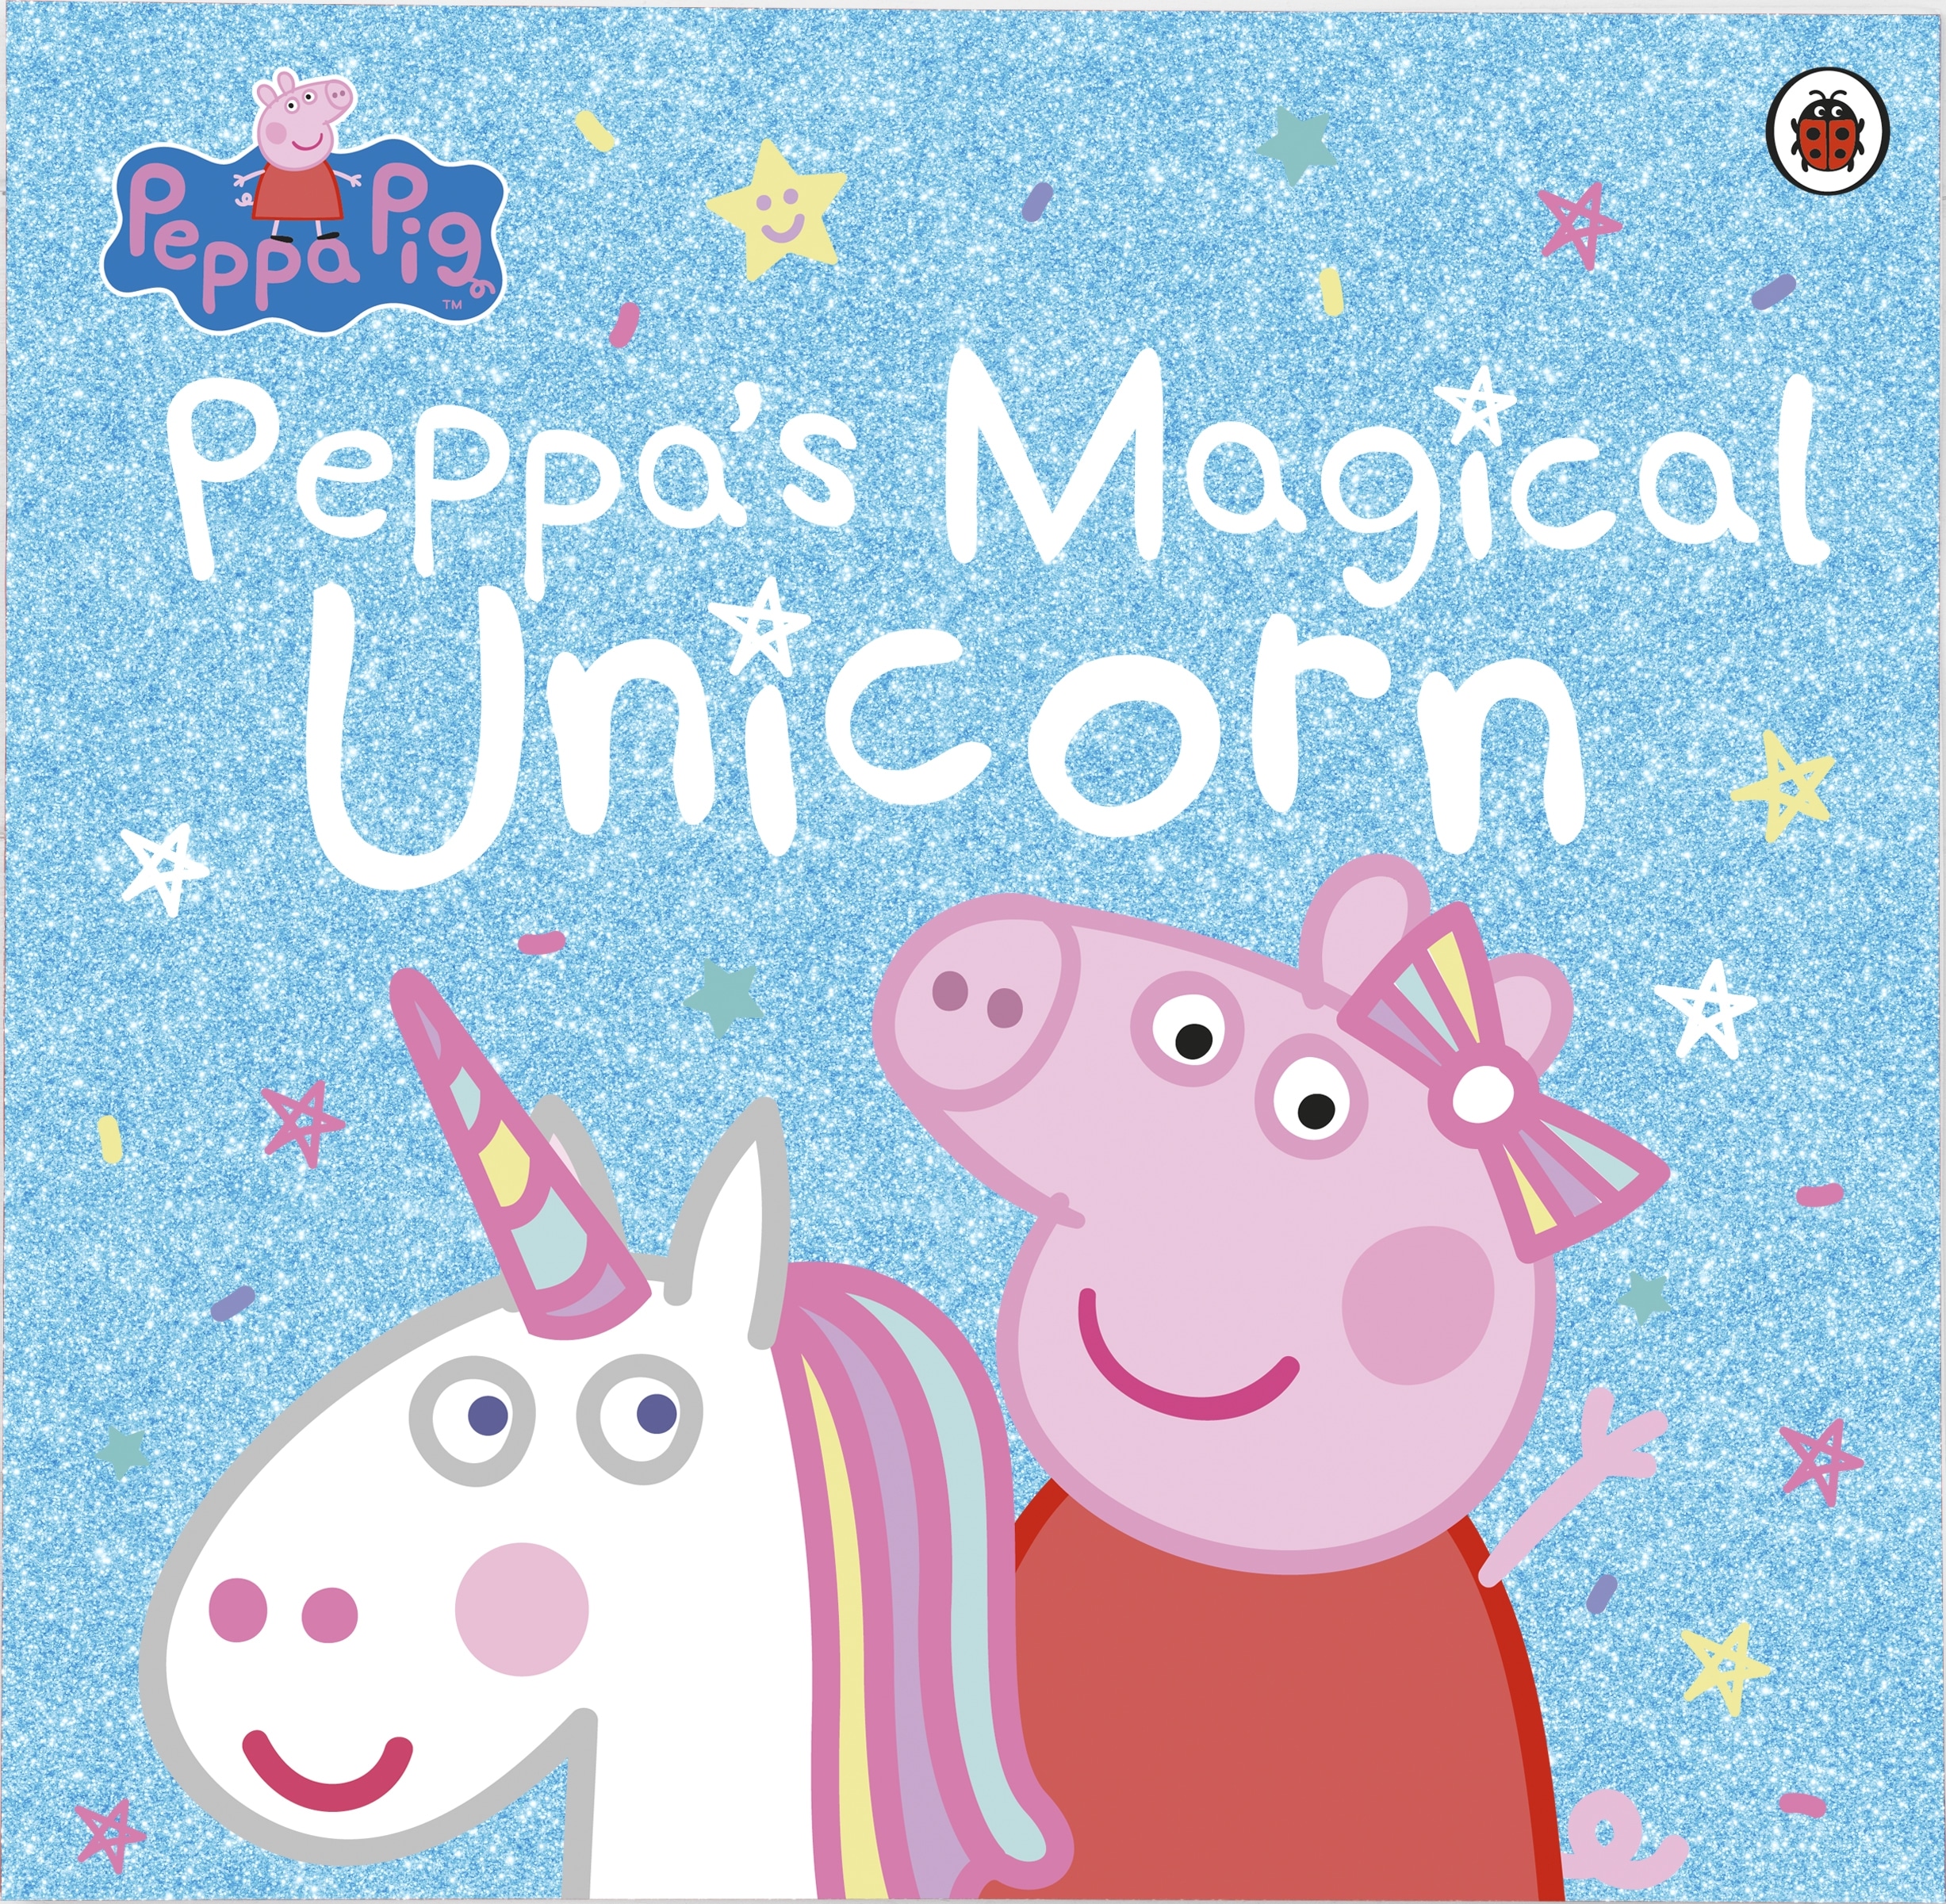 Book “Peppa Pig: Peppa's Magical Unicorn” by Peppa Pig — June 14, 2018